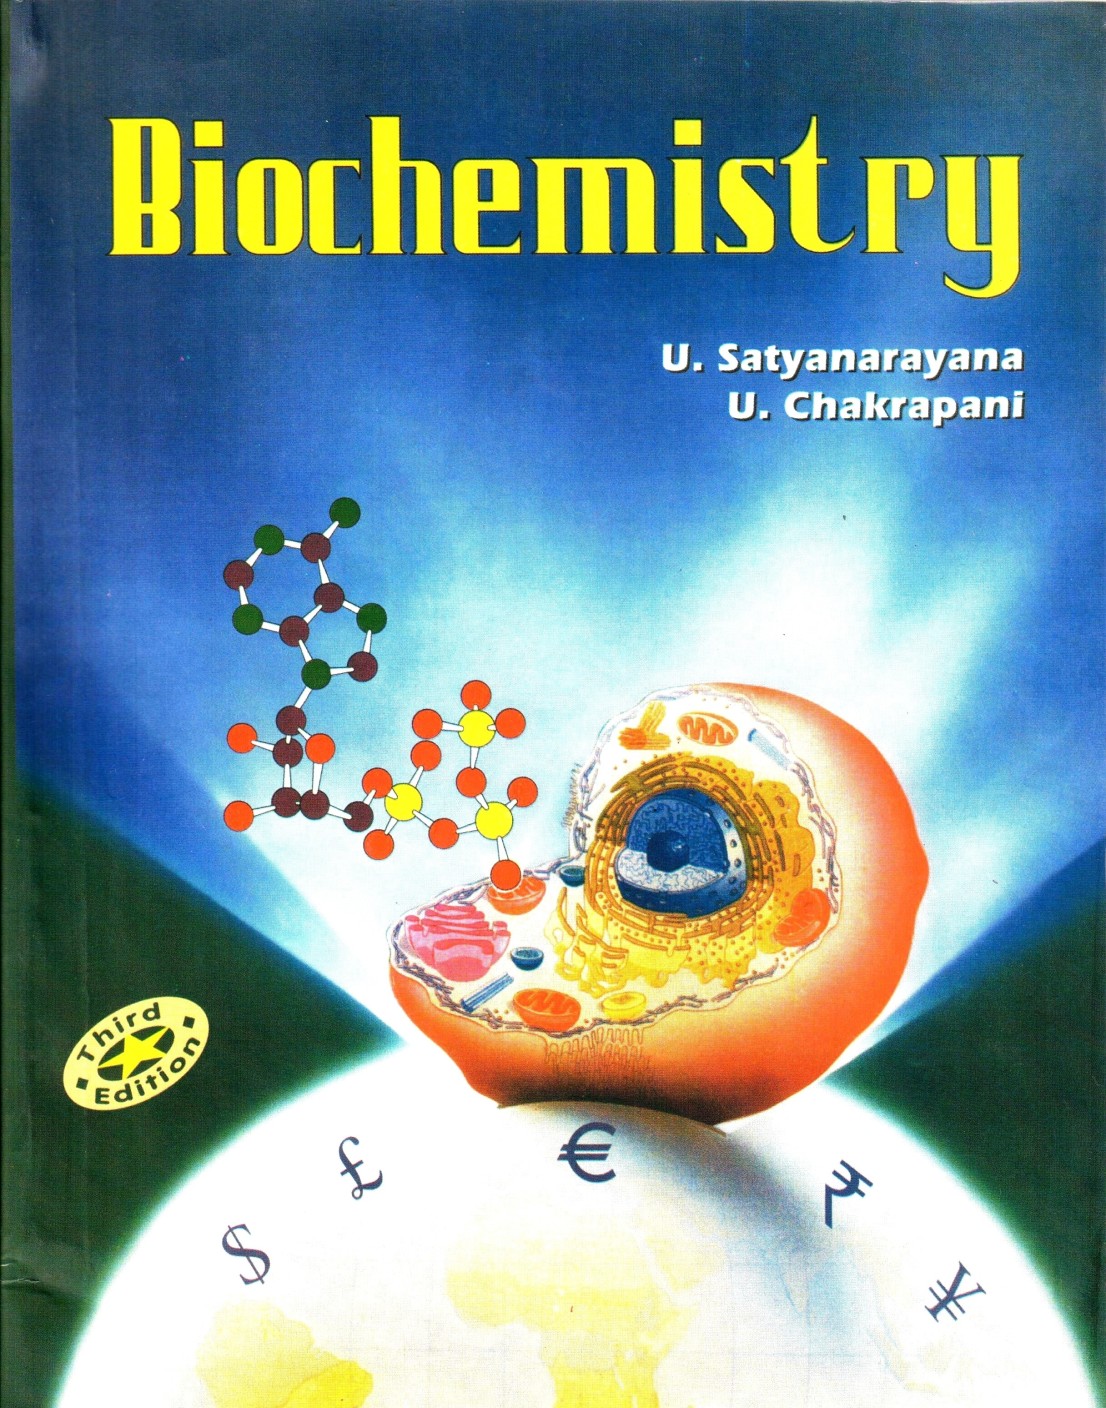 online-phd-in-biochemistry-infolearners